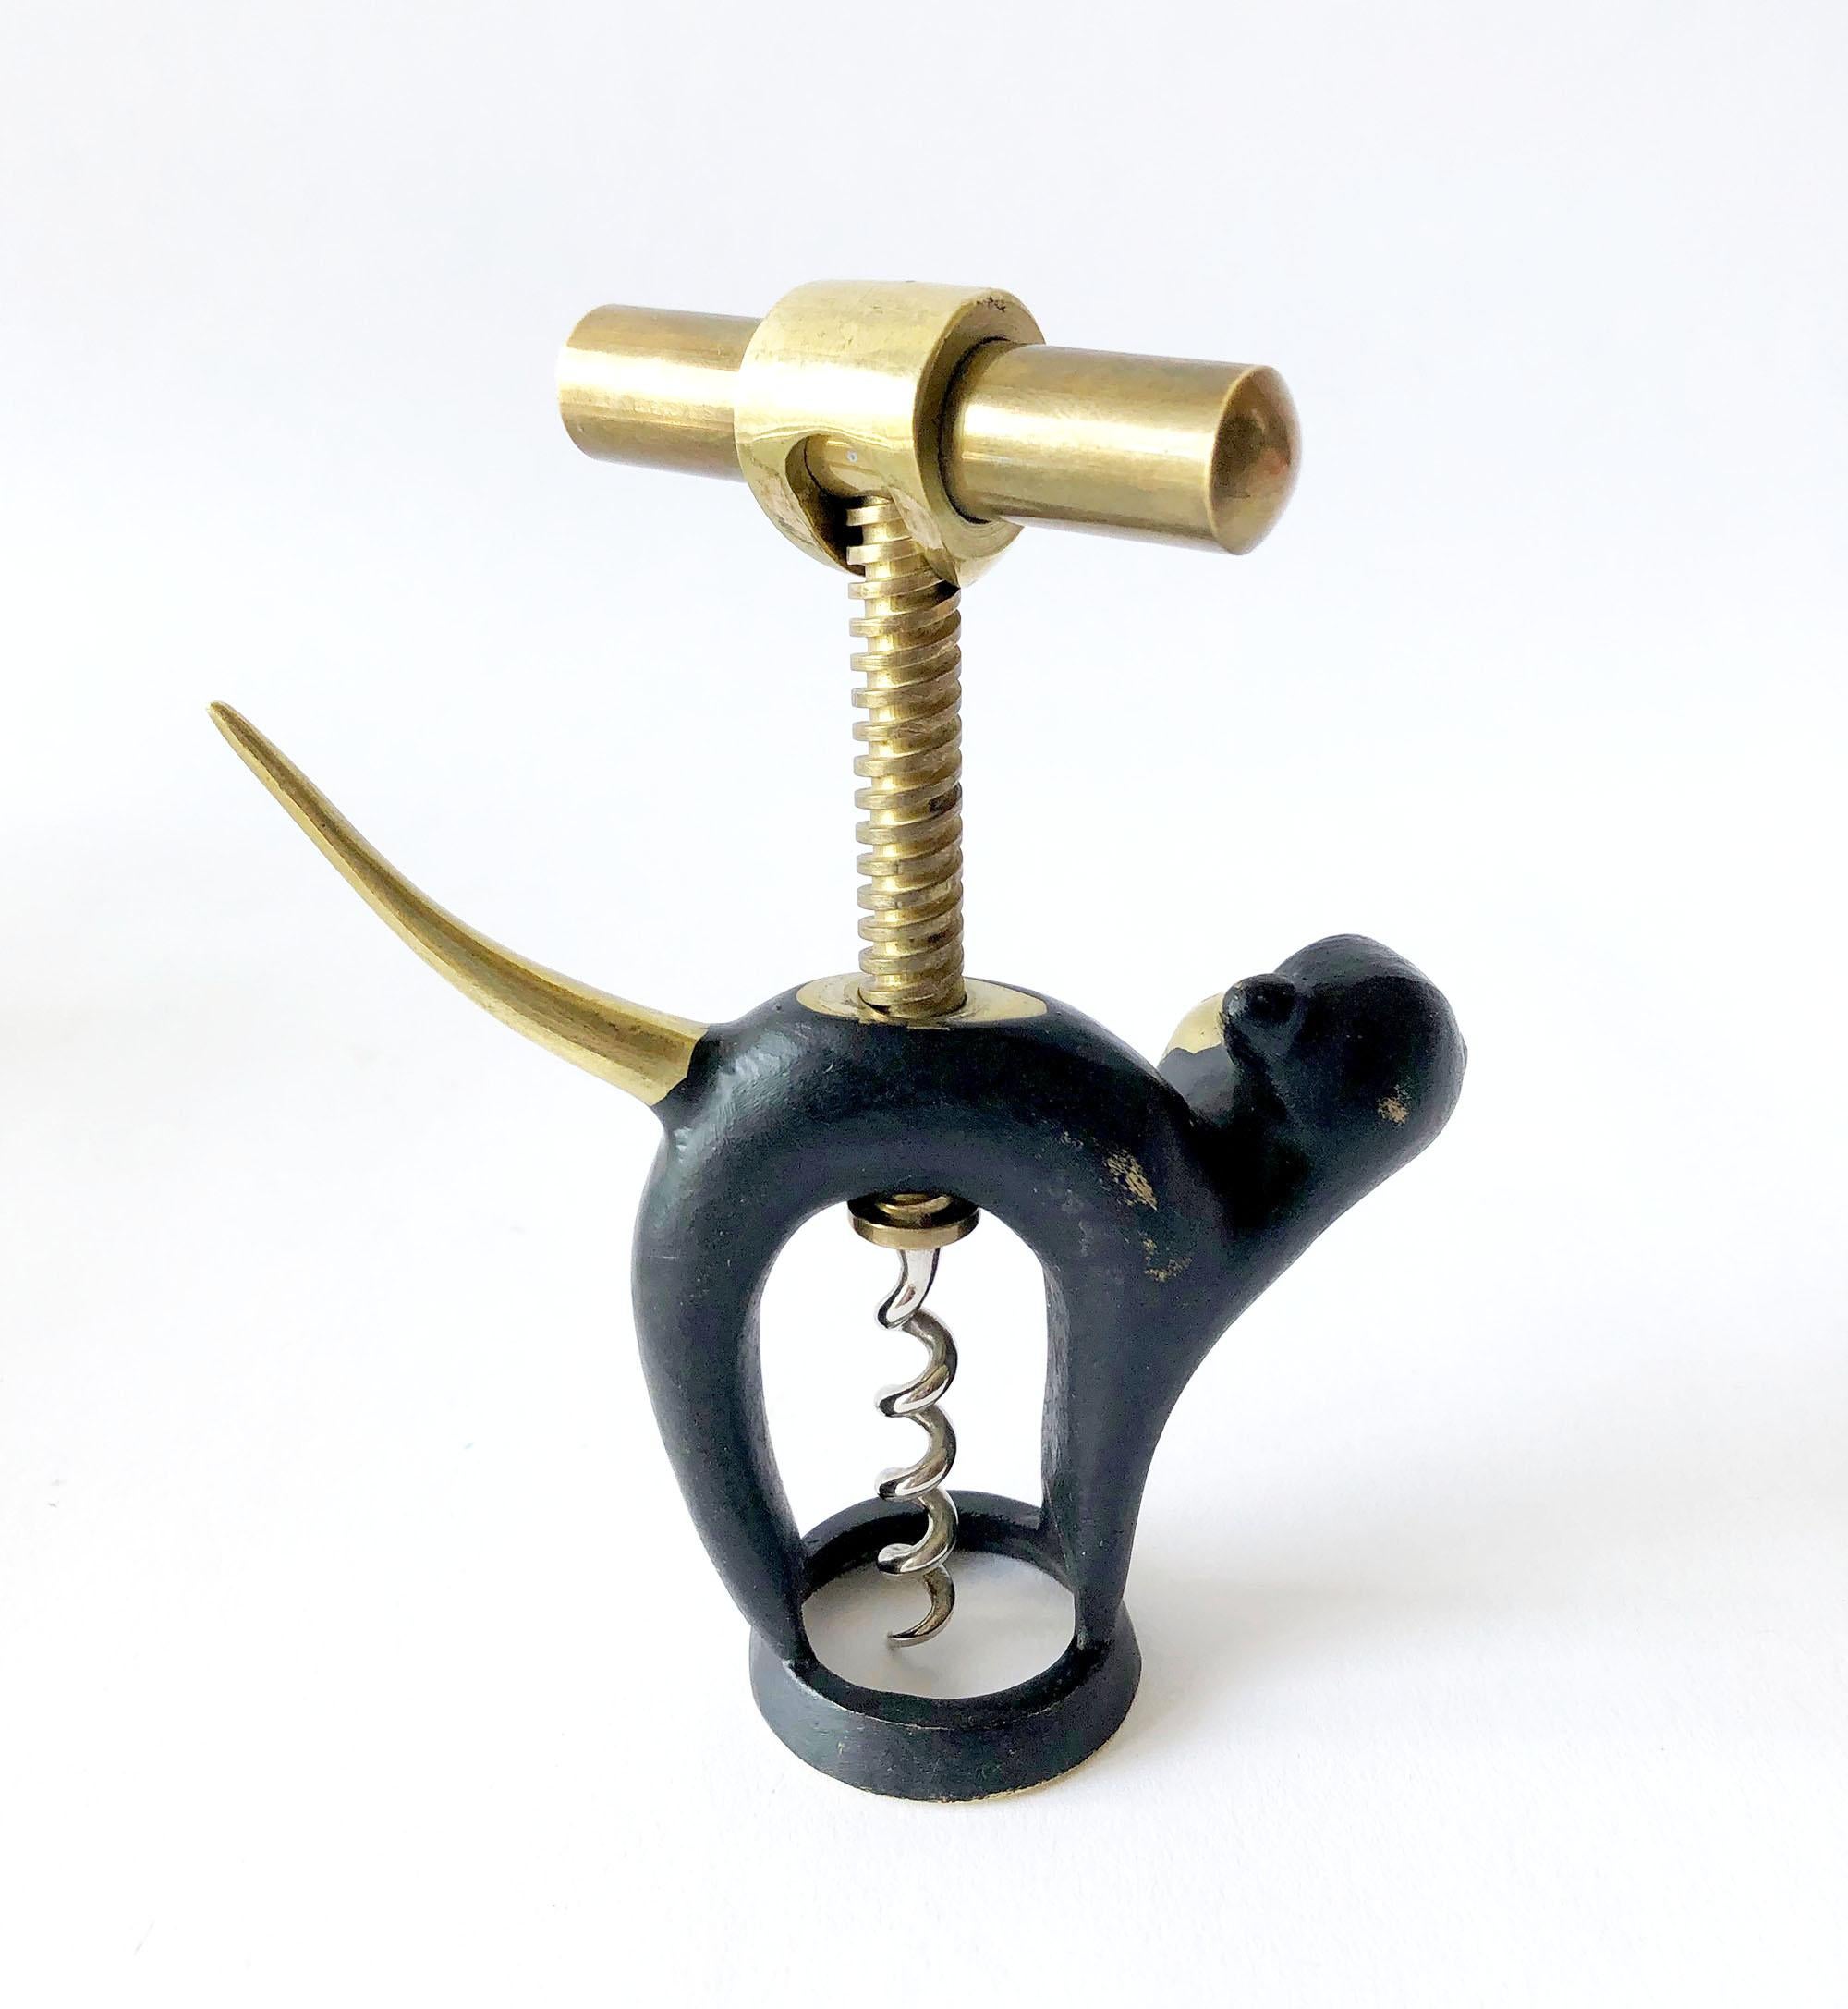 Bronze corkscrew bottle opener designed by Walter Bosse for Hertha Baller, circa 1950s. Corkscrew measures 5